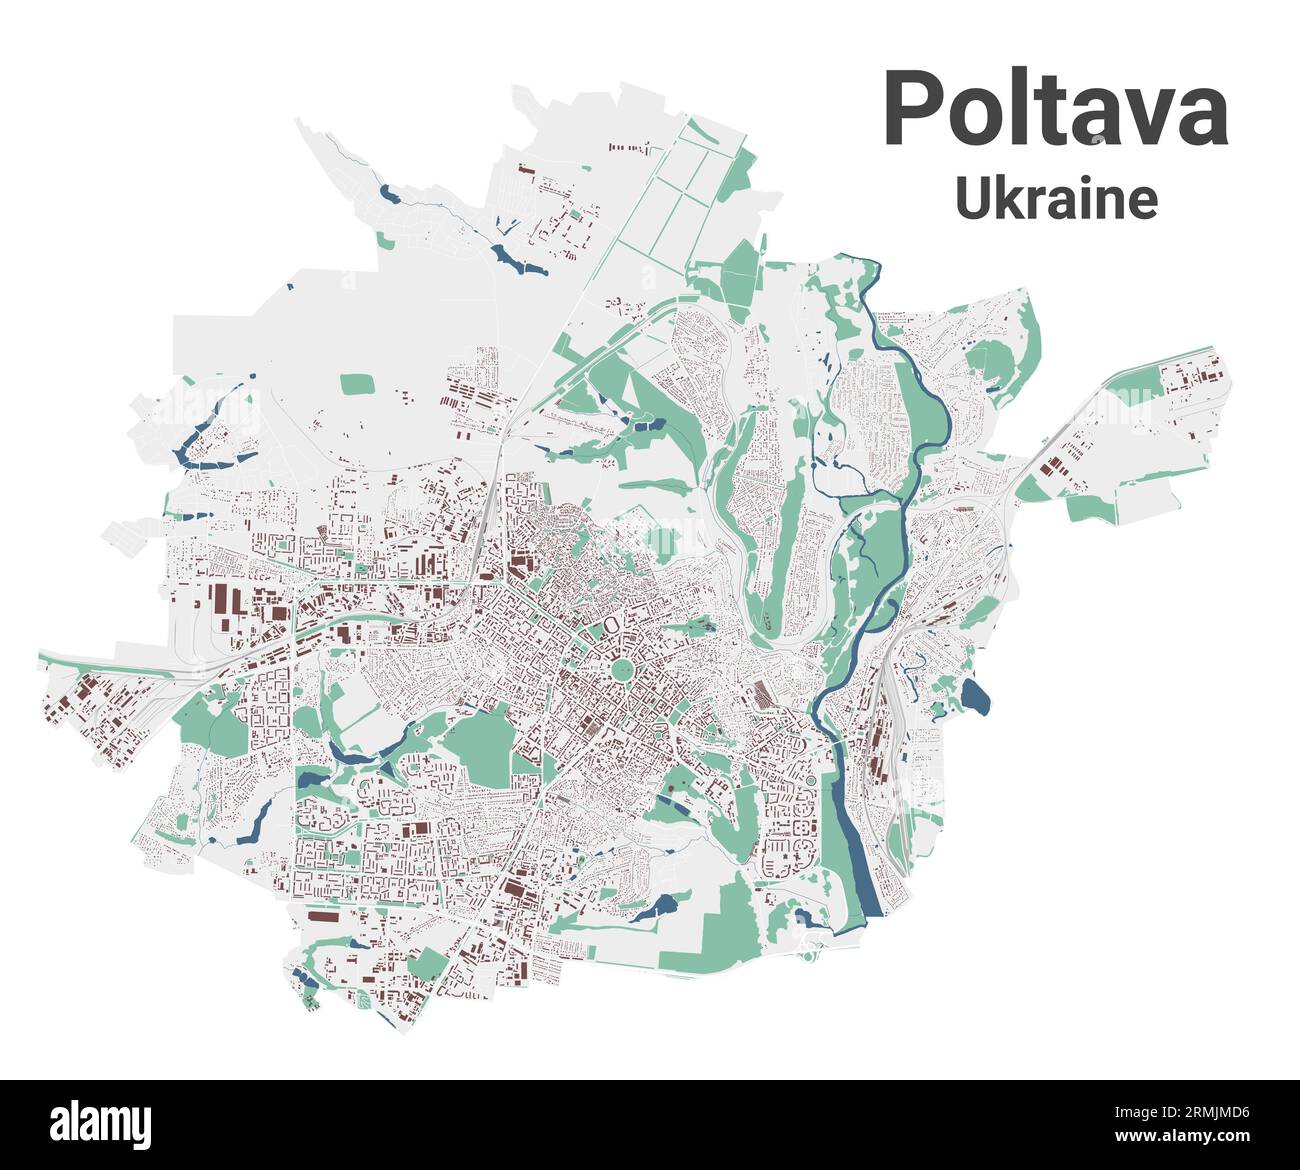 Mappa di Poltava, città in Ucraina. Mappa dell'area amministrativa municipale con edifici, fiumi e strade, parchi e ferrovie. Illustrazione vettoriale. Illustrazione Vettoriale